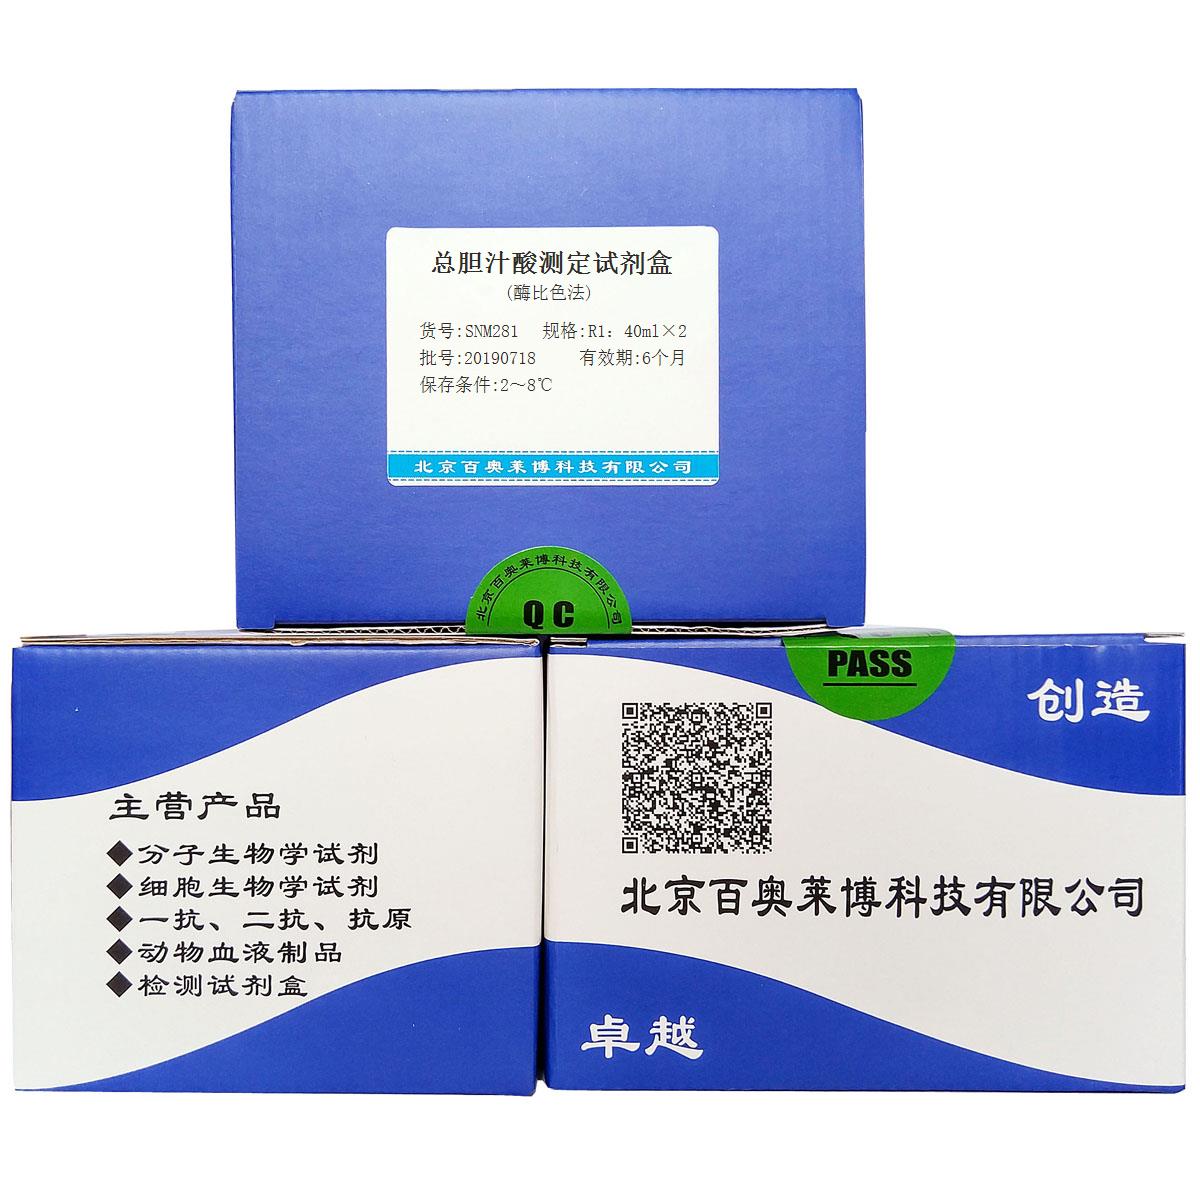 总胆汁酸测定试剂盒(酶比色法)优惠促销